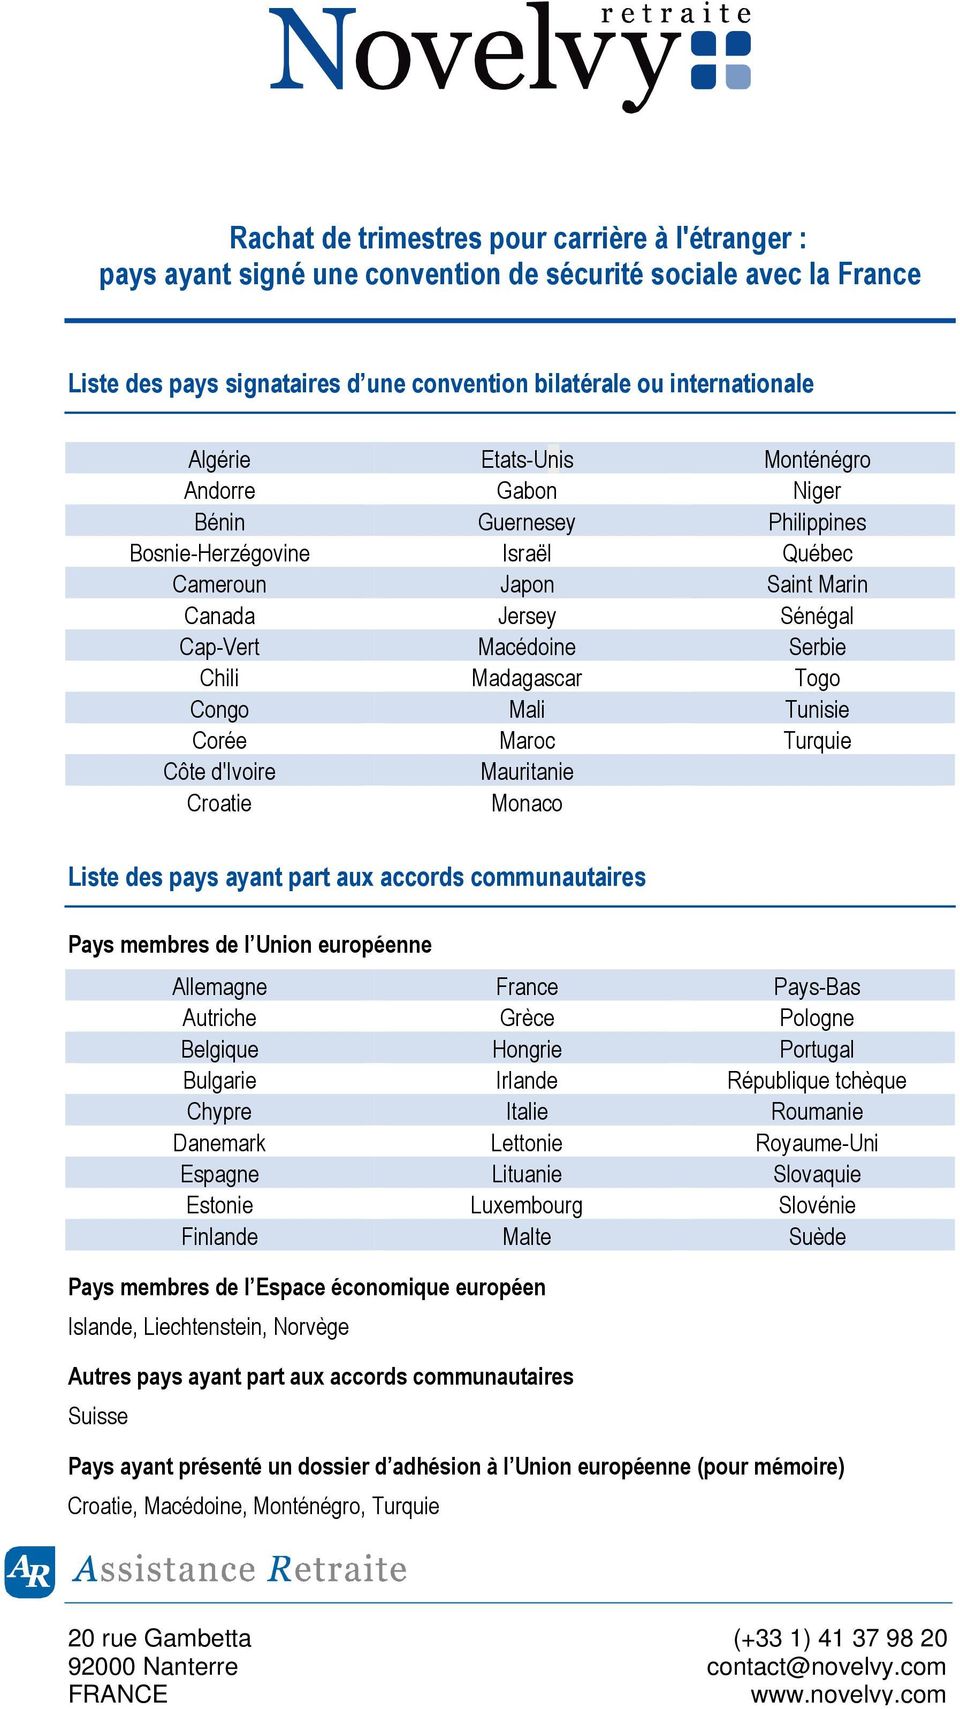 Congo Mali Tunisie Corée Maroc Turquie Côte d'ivoire Mauritanie Croatie Monaco Liste des pays ayant part aux accords communautaires Pays membres de l Union européenne Allemagne France Pays-Bas